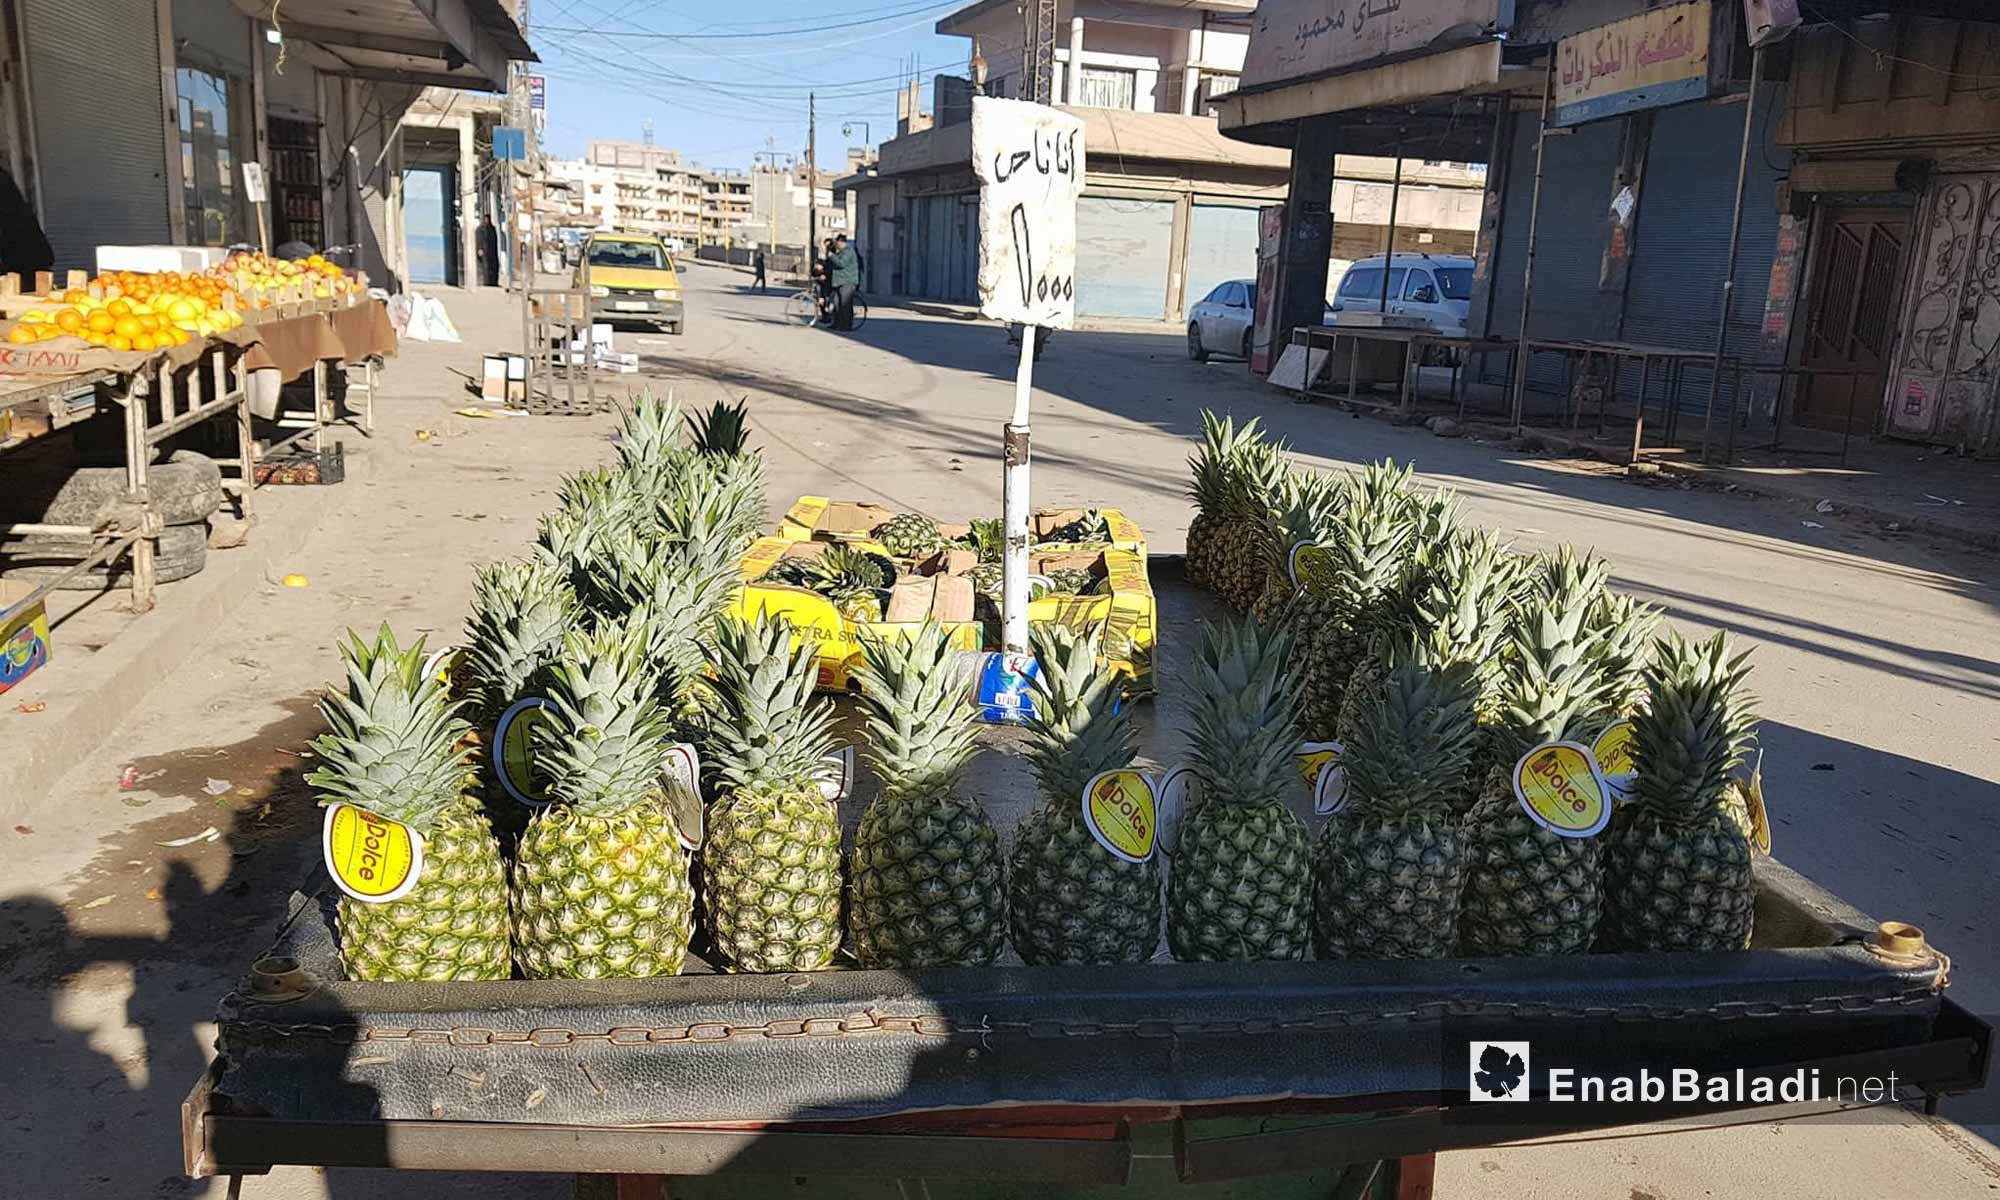 بسطة تحمل فاكهة الأناناس في سوق الخضرة في القامشلي - 30 كانون الثاني 2018 (عنب بلدي)